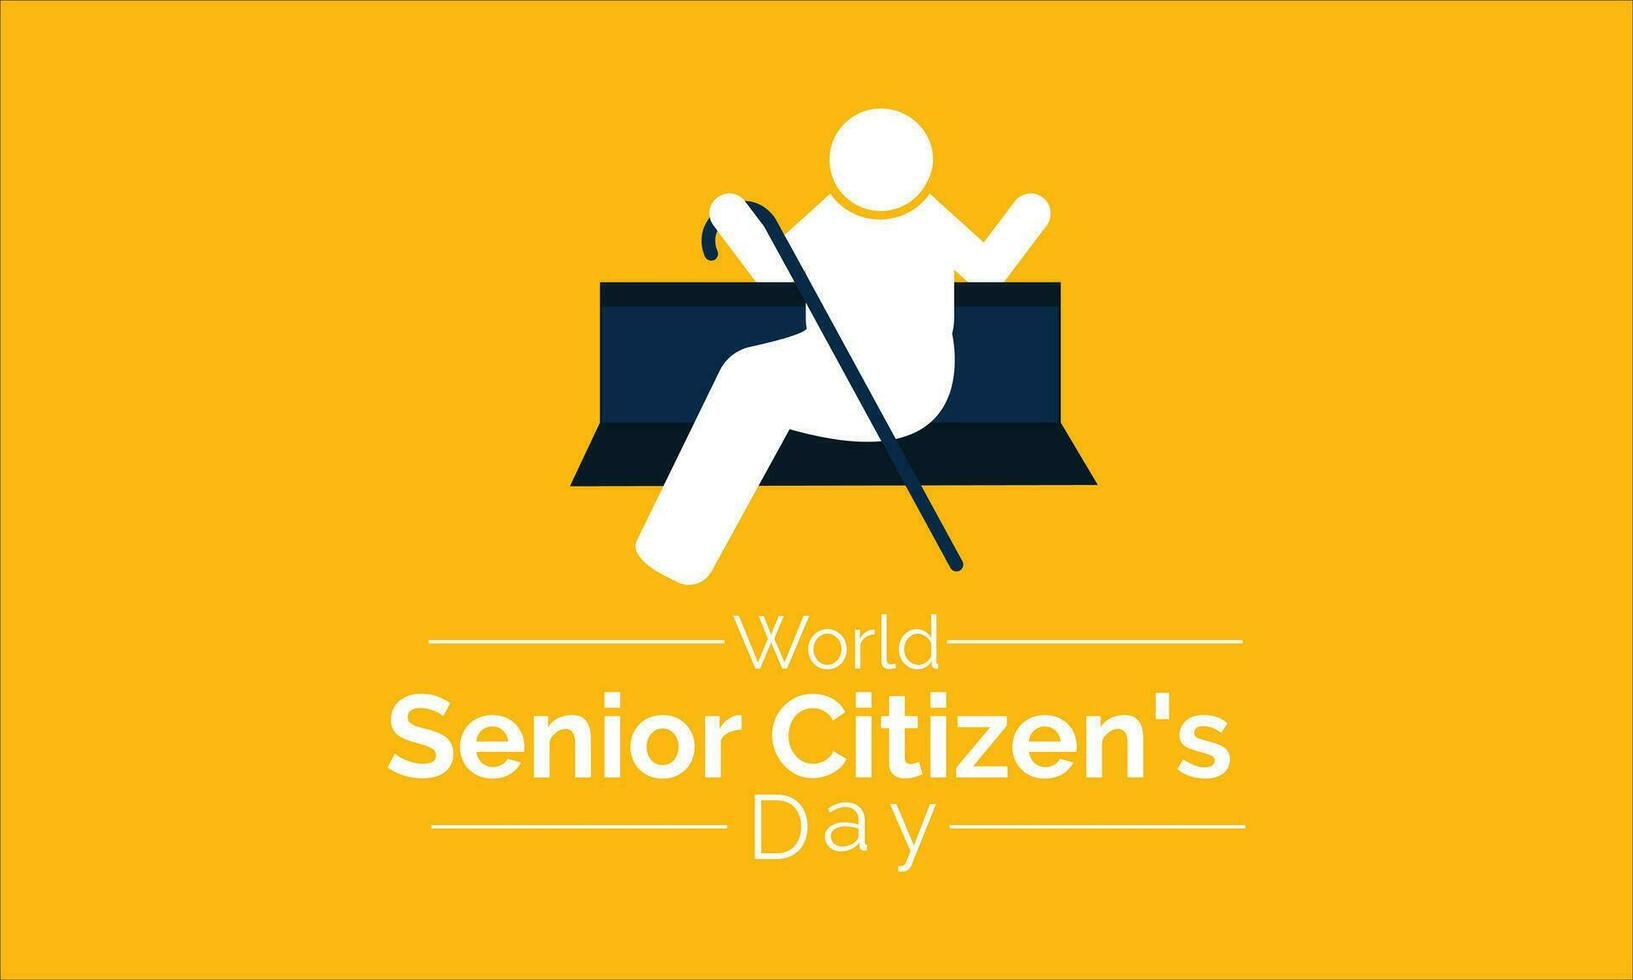 värld senior medborgarens dag observerats varje år på augusti 21:e worldwide.vector konst vektor